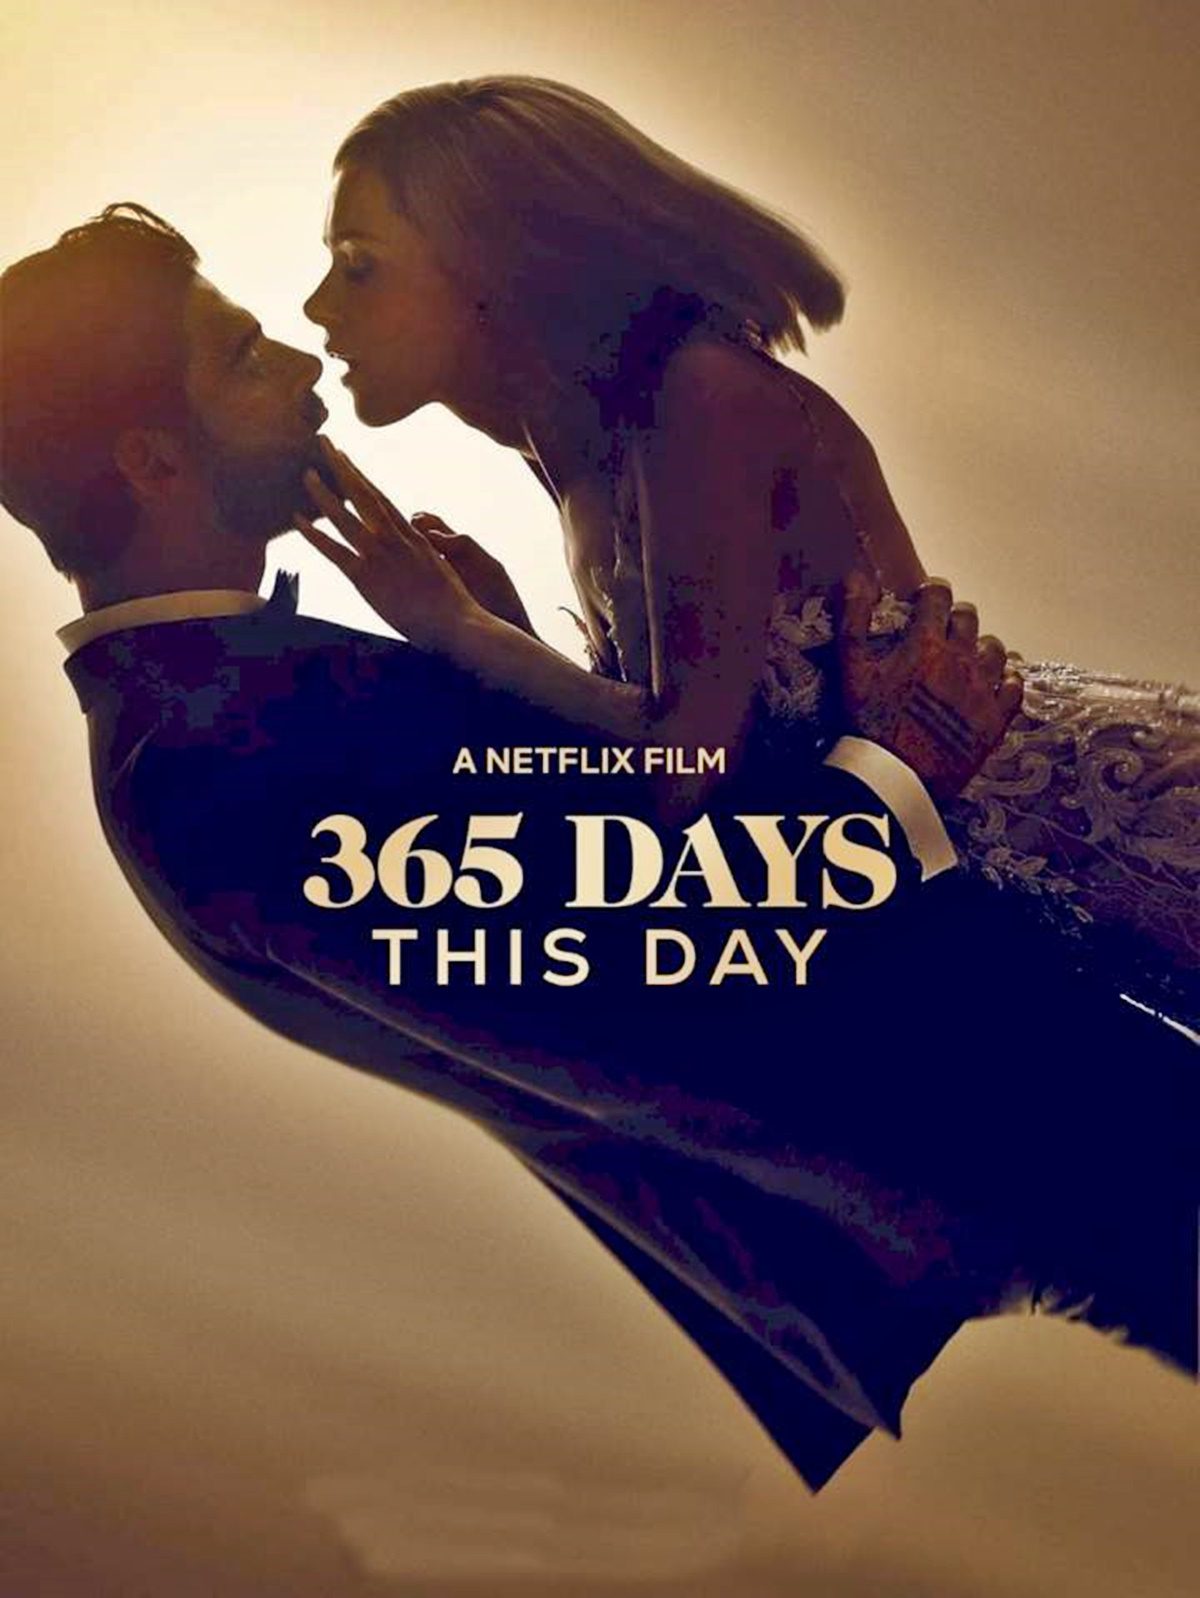 Döbbenetes siker a 365 nap című erotikus Netflix film folytatása!